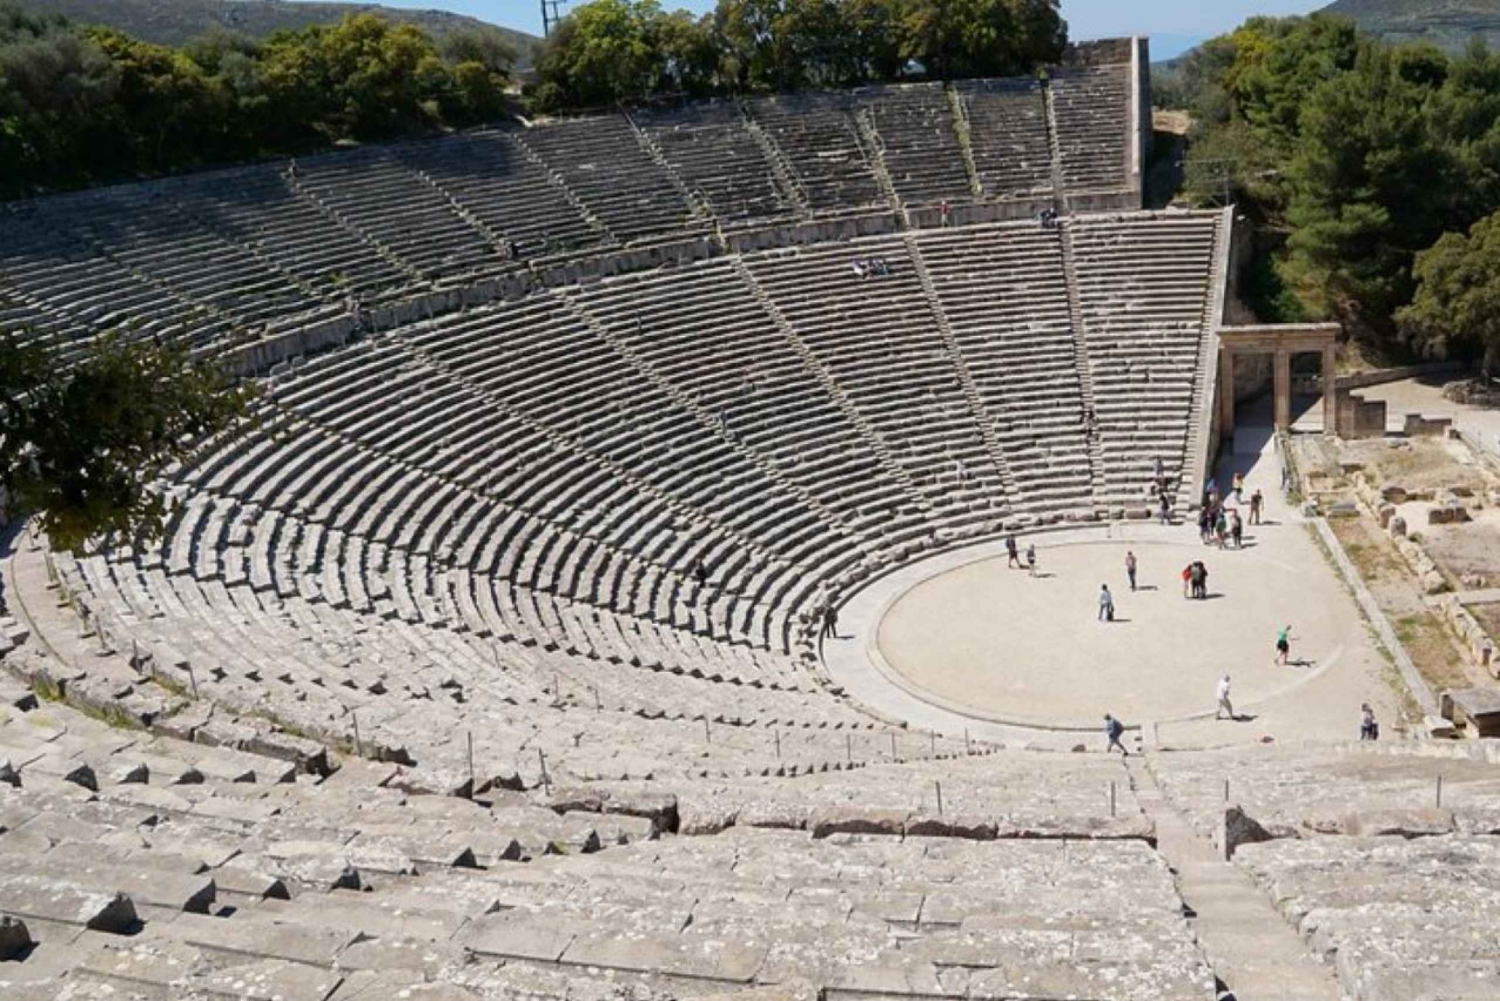 Från Aten: Mykene, Epidaurus, Korint och Nafplio